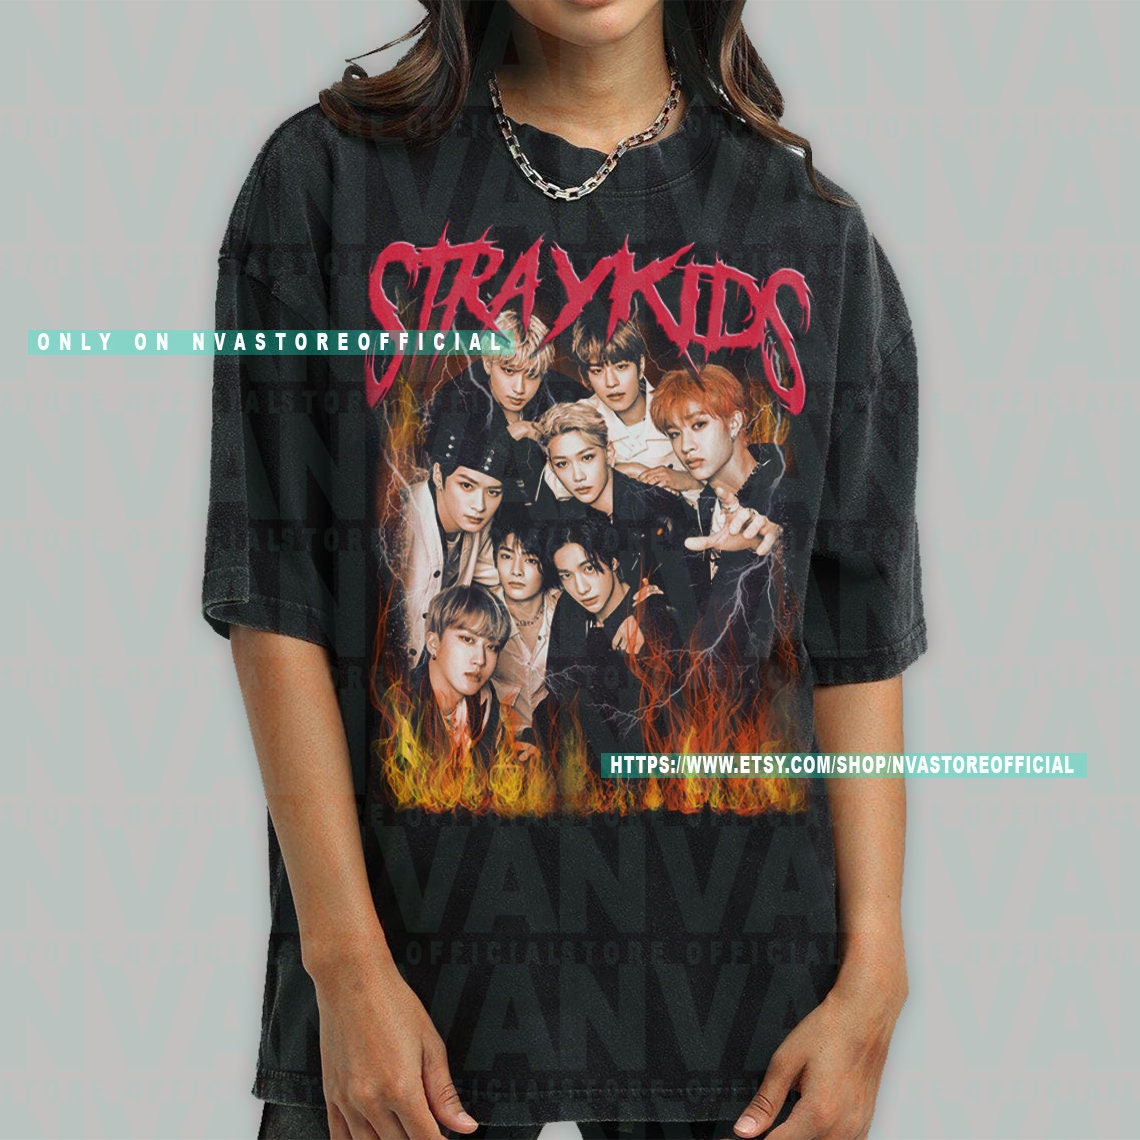 Stray Kids Heavy Metal - Fan Shirt, Kpop Kpop Fandom, Short-sleeve Unisex Etsy Top T-shirt, Stay SKZ, Concert, Made Shirt, Shirt, Singapore Kpop